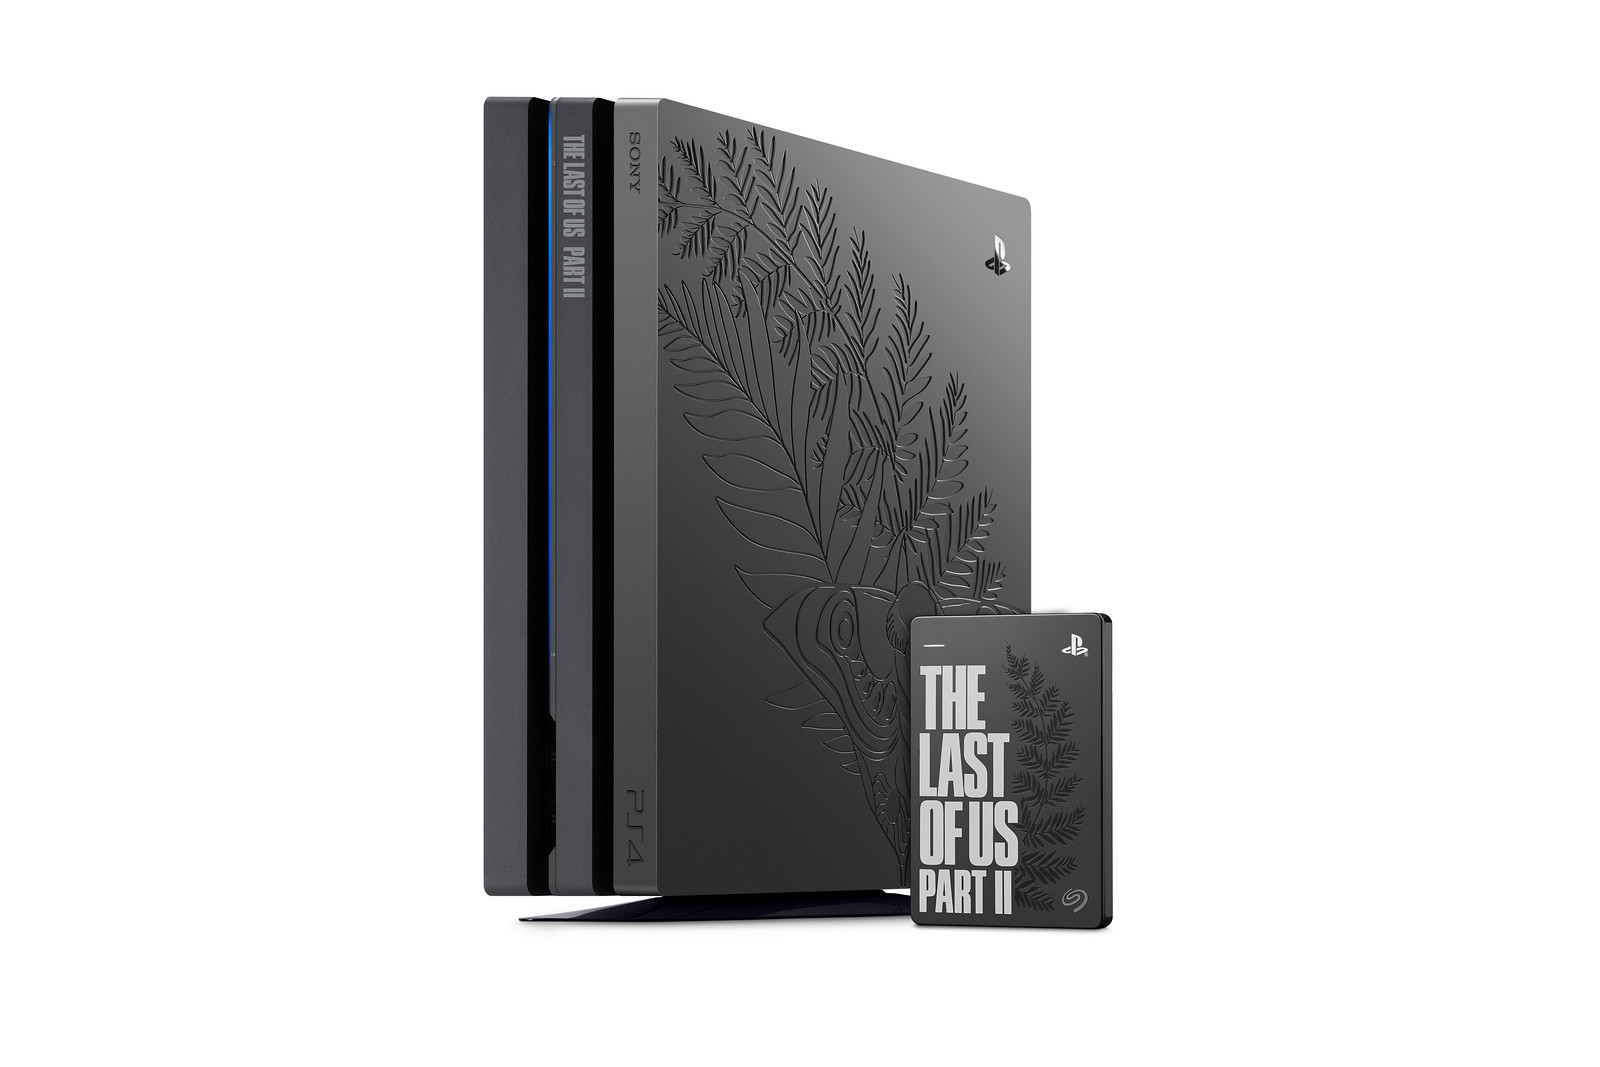 The Last of Us Part II s'offre une PS4 et plusieurs périphériques collector